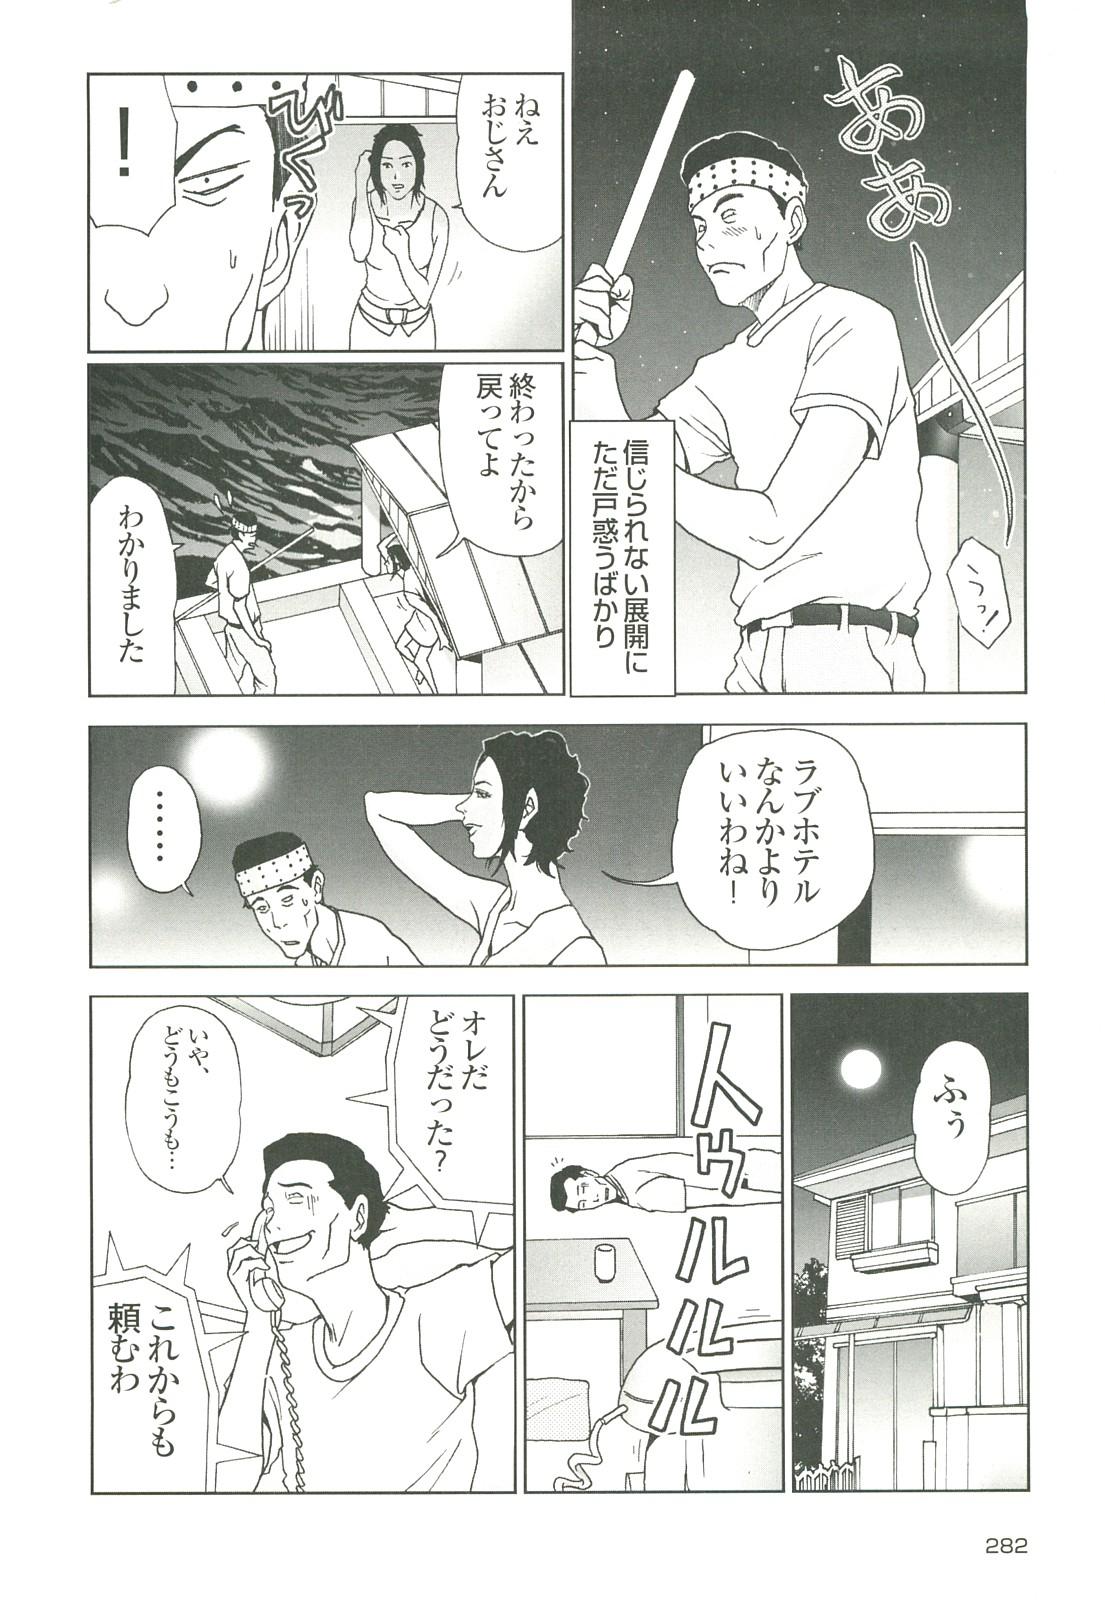 コミック裏モノJAPAN Vol.18 今井のりたつスペシャル号 281